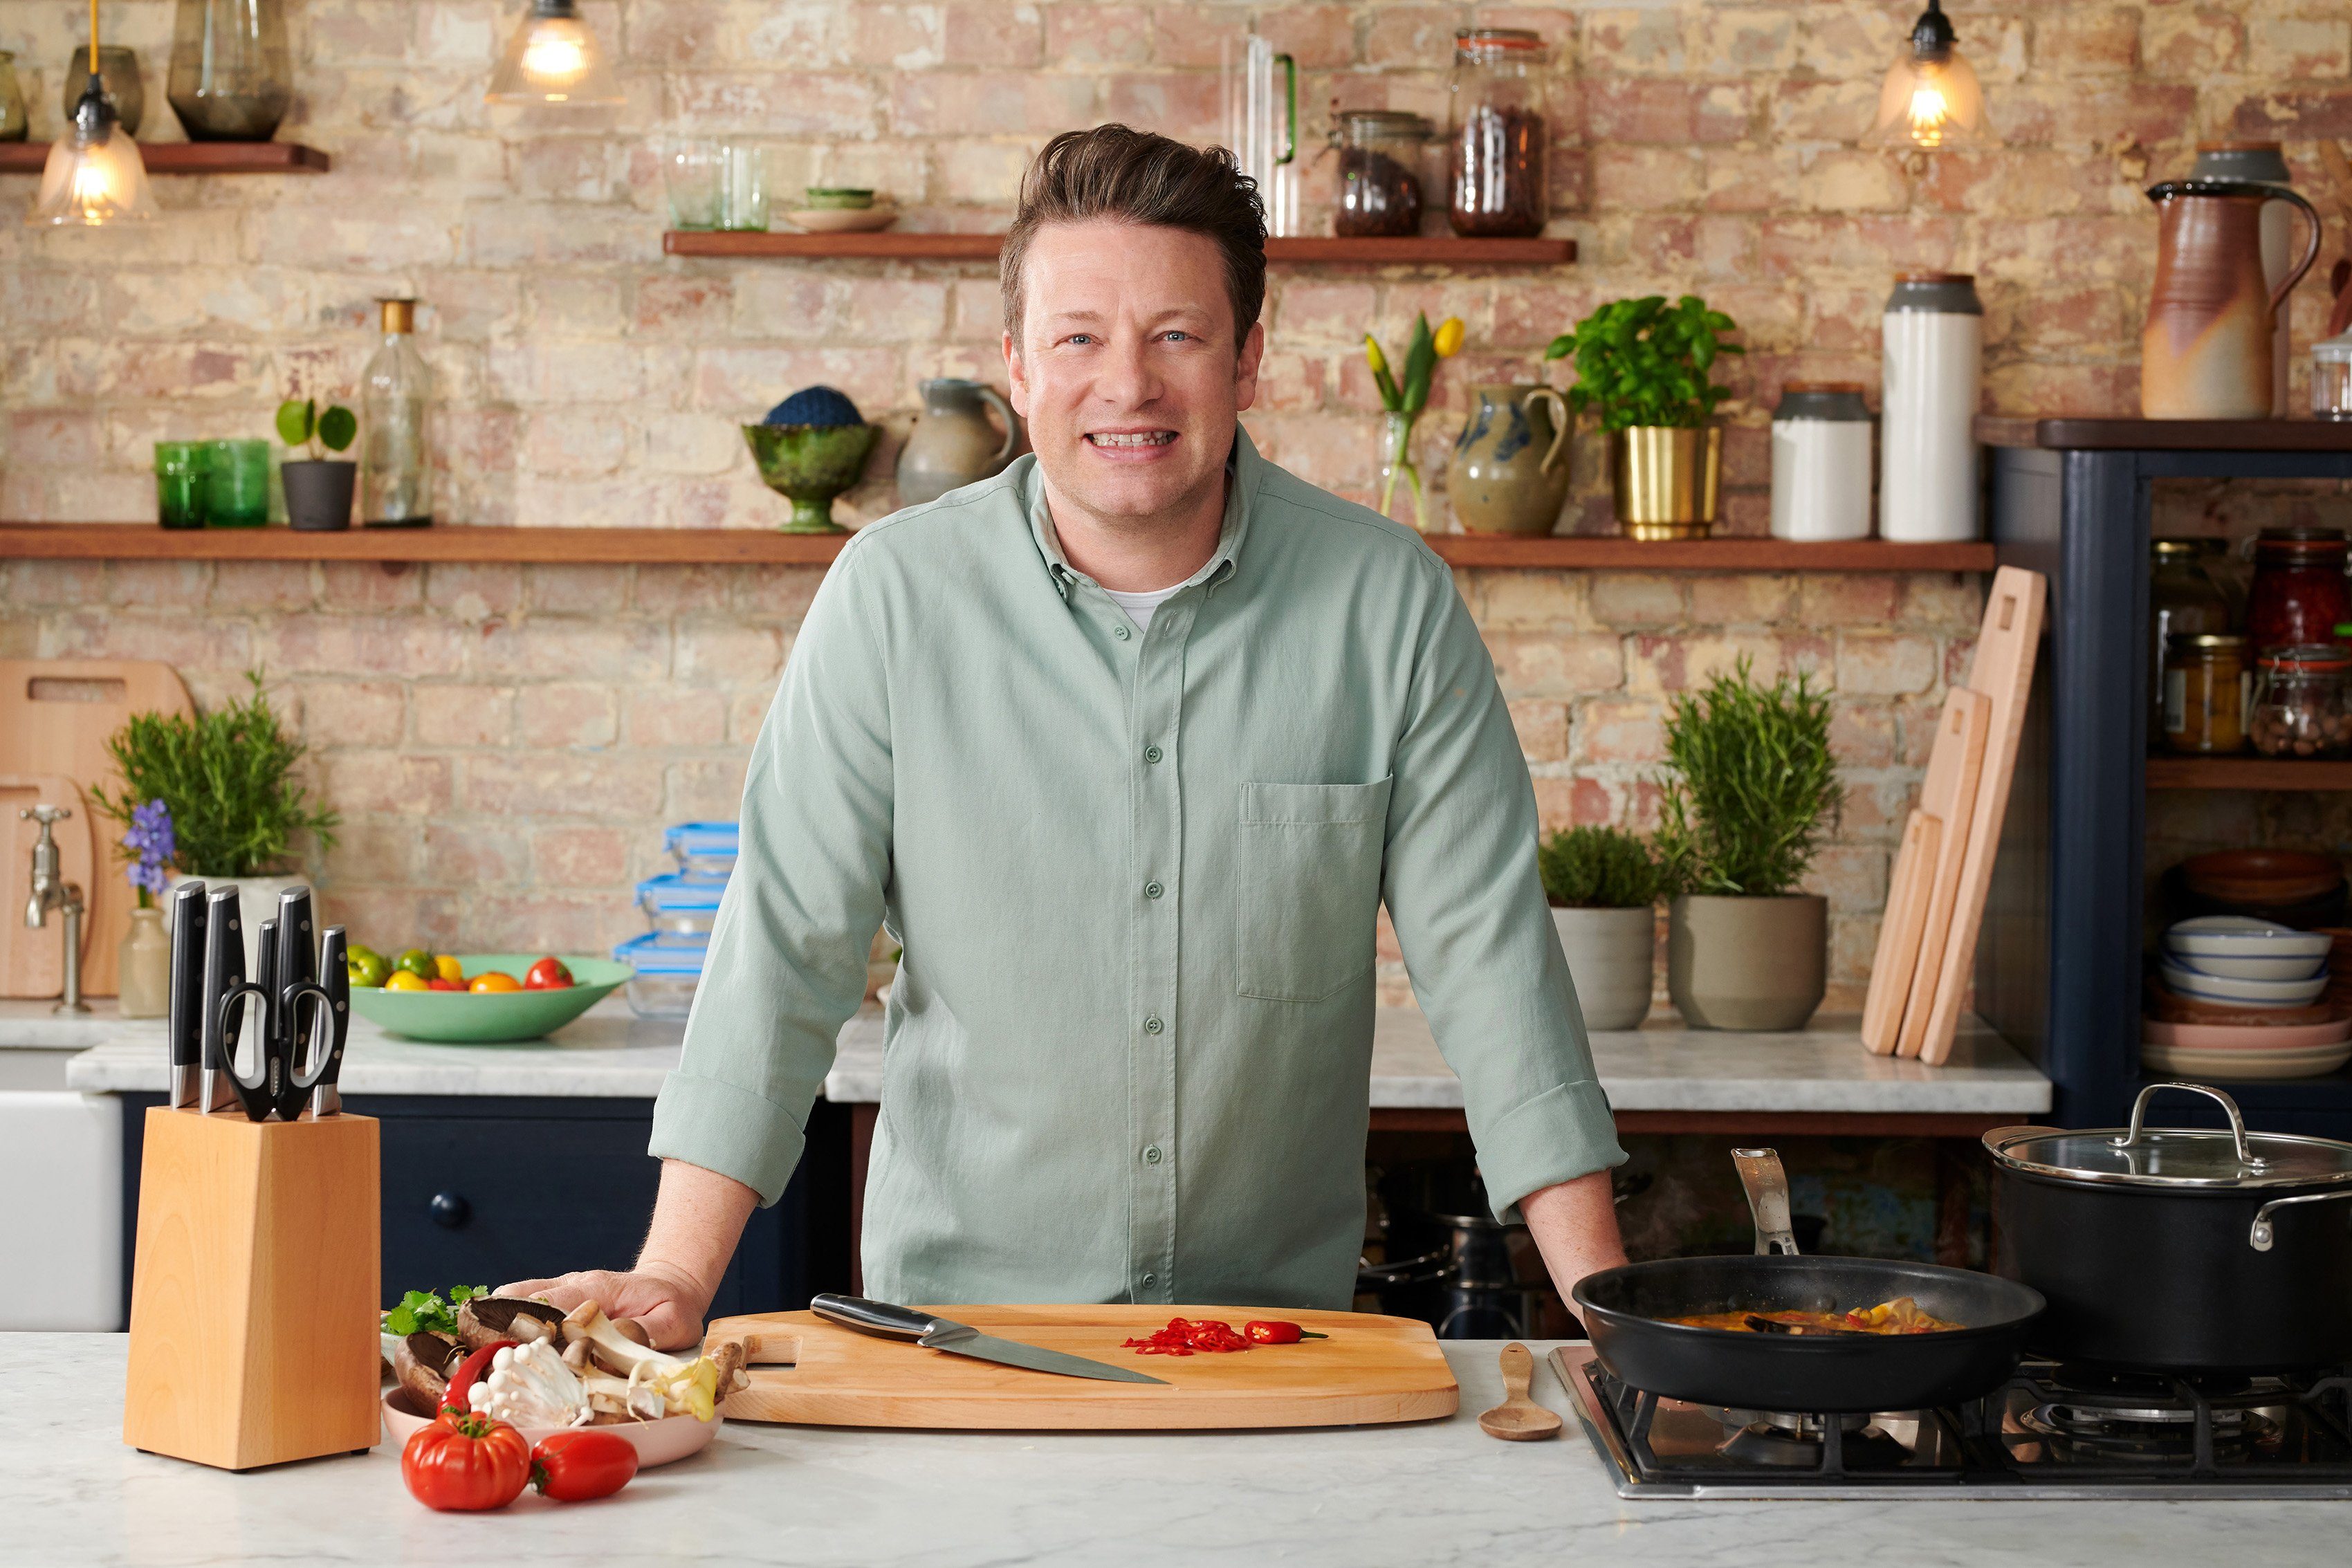 Tefal Fleischmesser Jamie Oliver Leistung, unverwechselbares widerstandsfähig/langlebig hohe K26702, Design